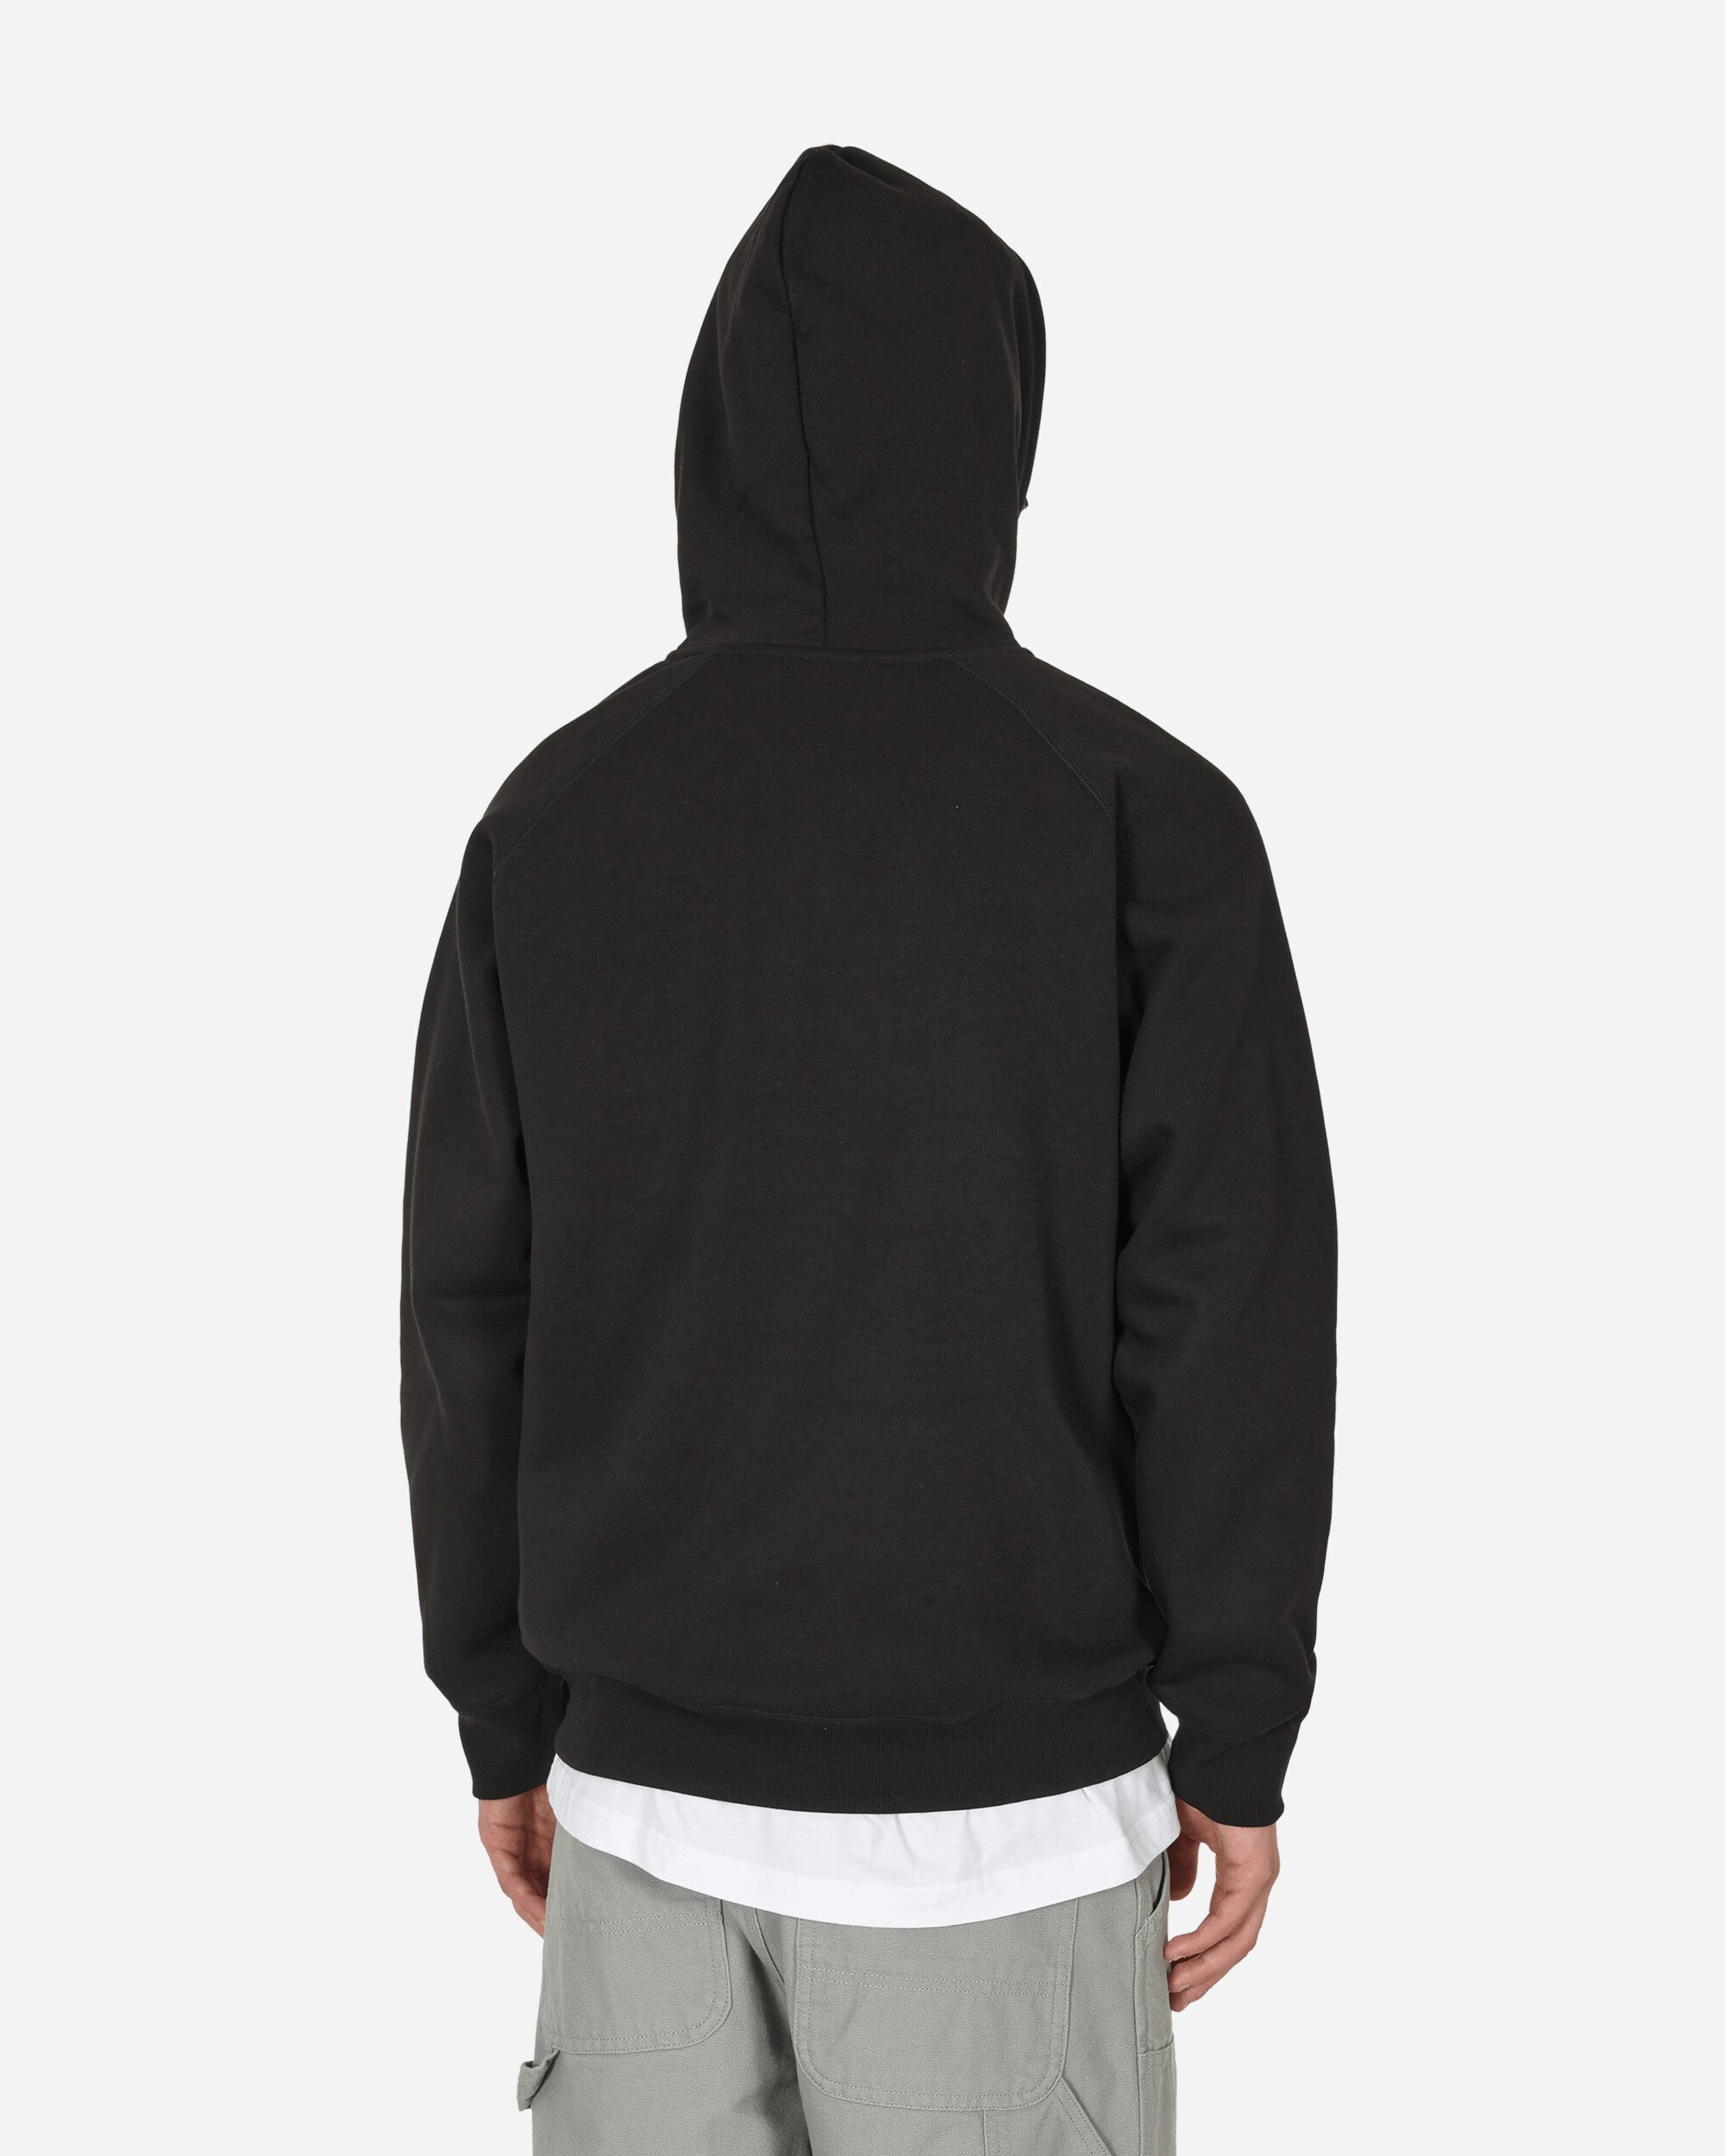 Chase Hooded Sweatshirt Black - 3